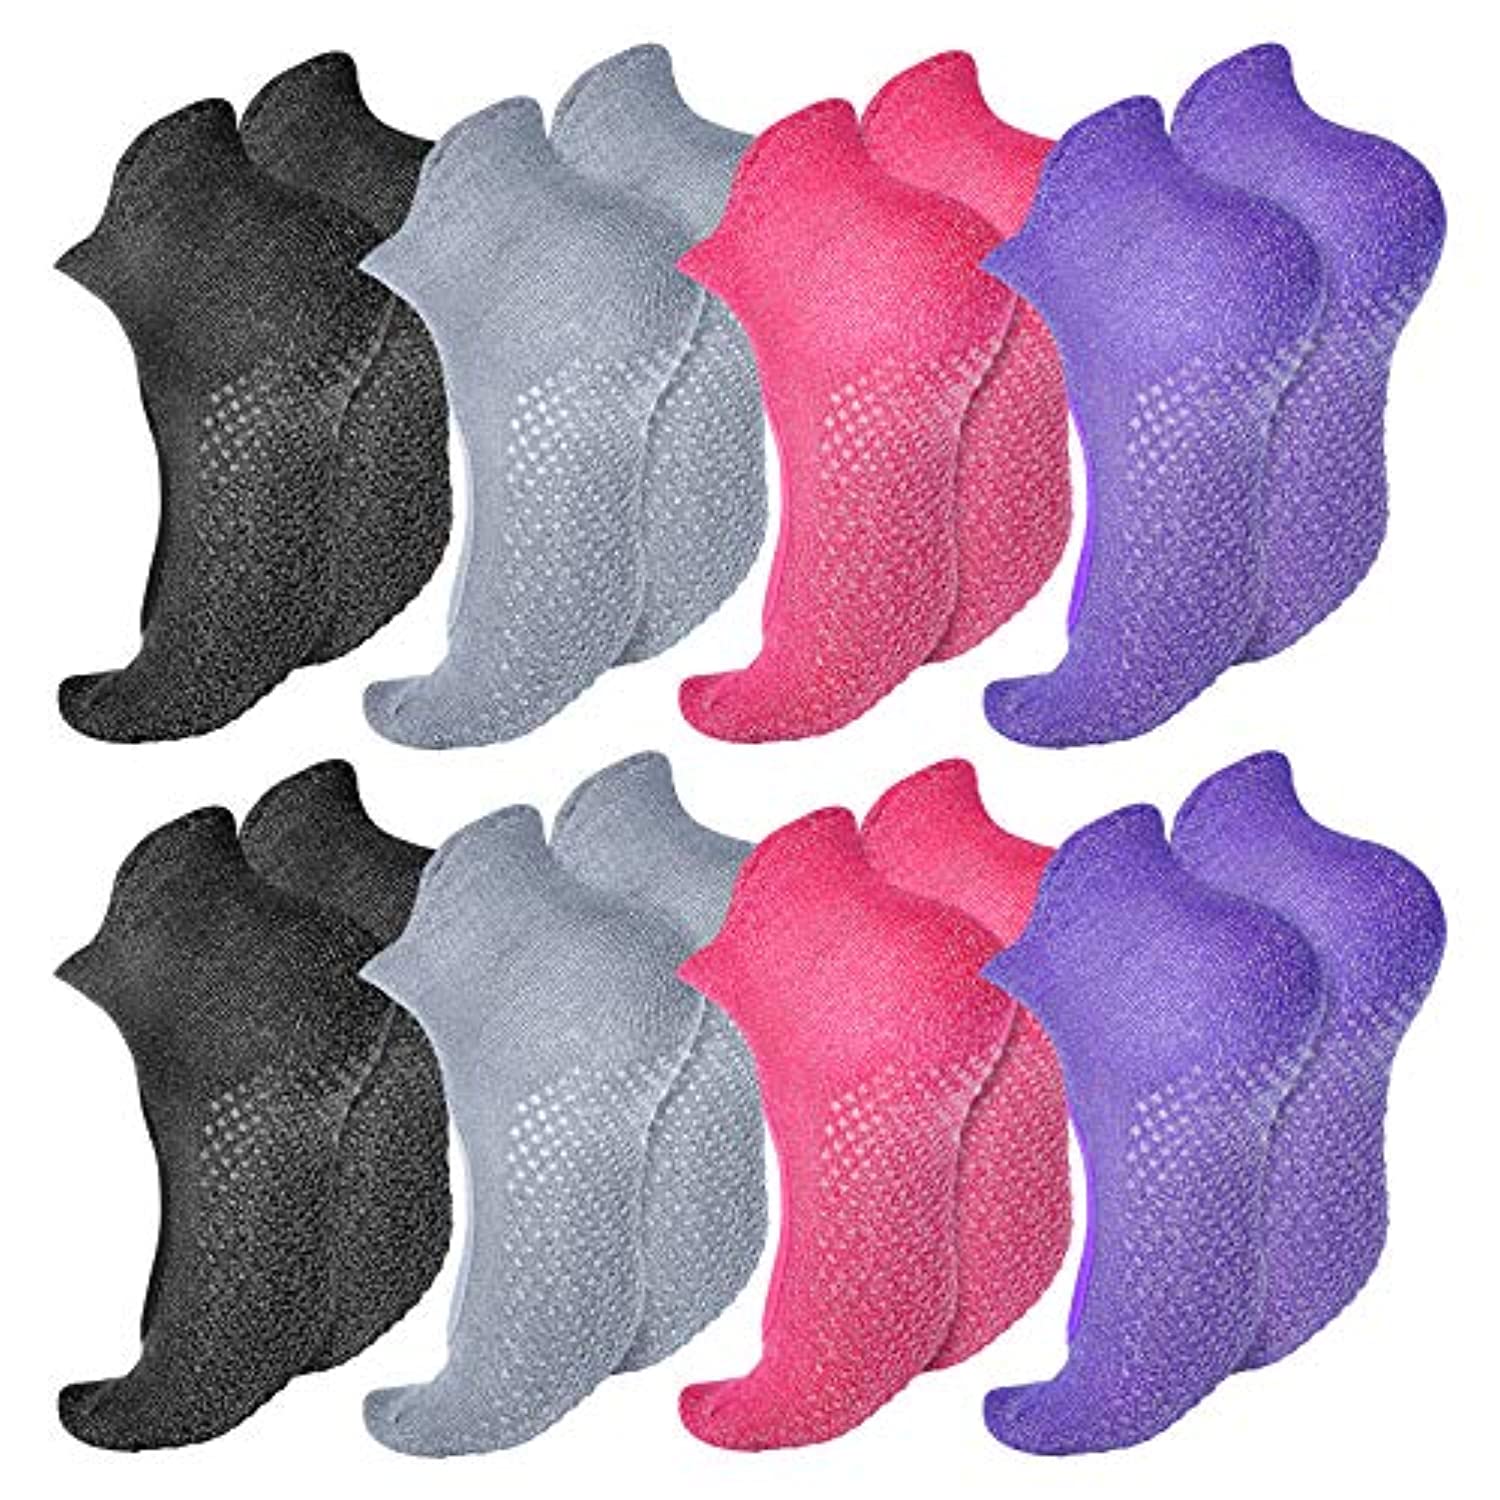 8 pares de calcetines antideslizantes para yoga, pilates, barra, hogar para  mujeres